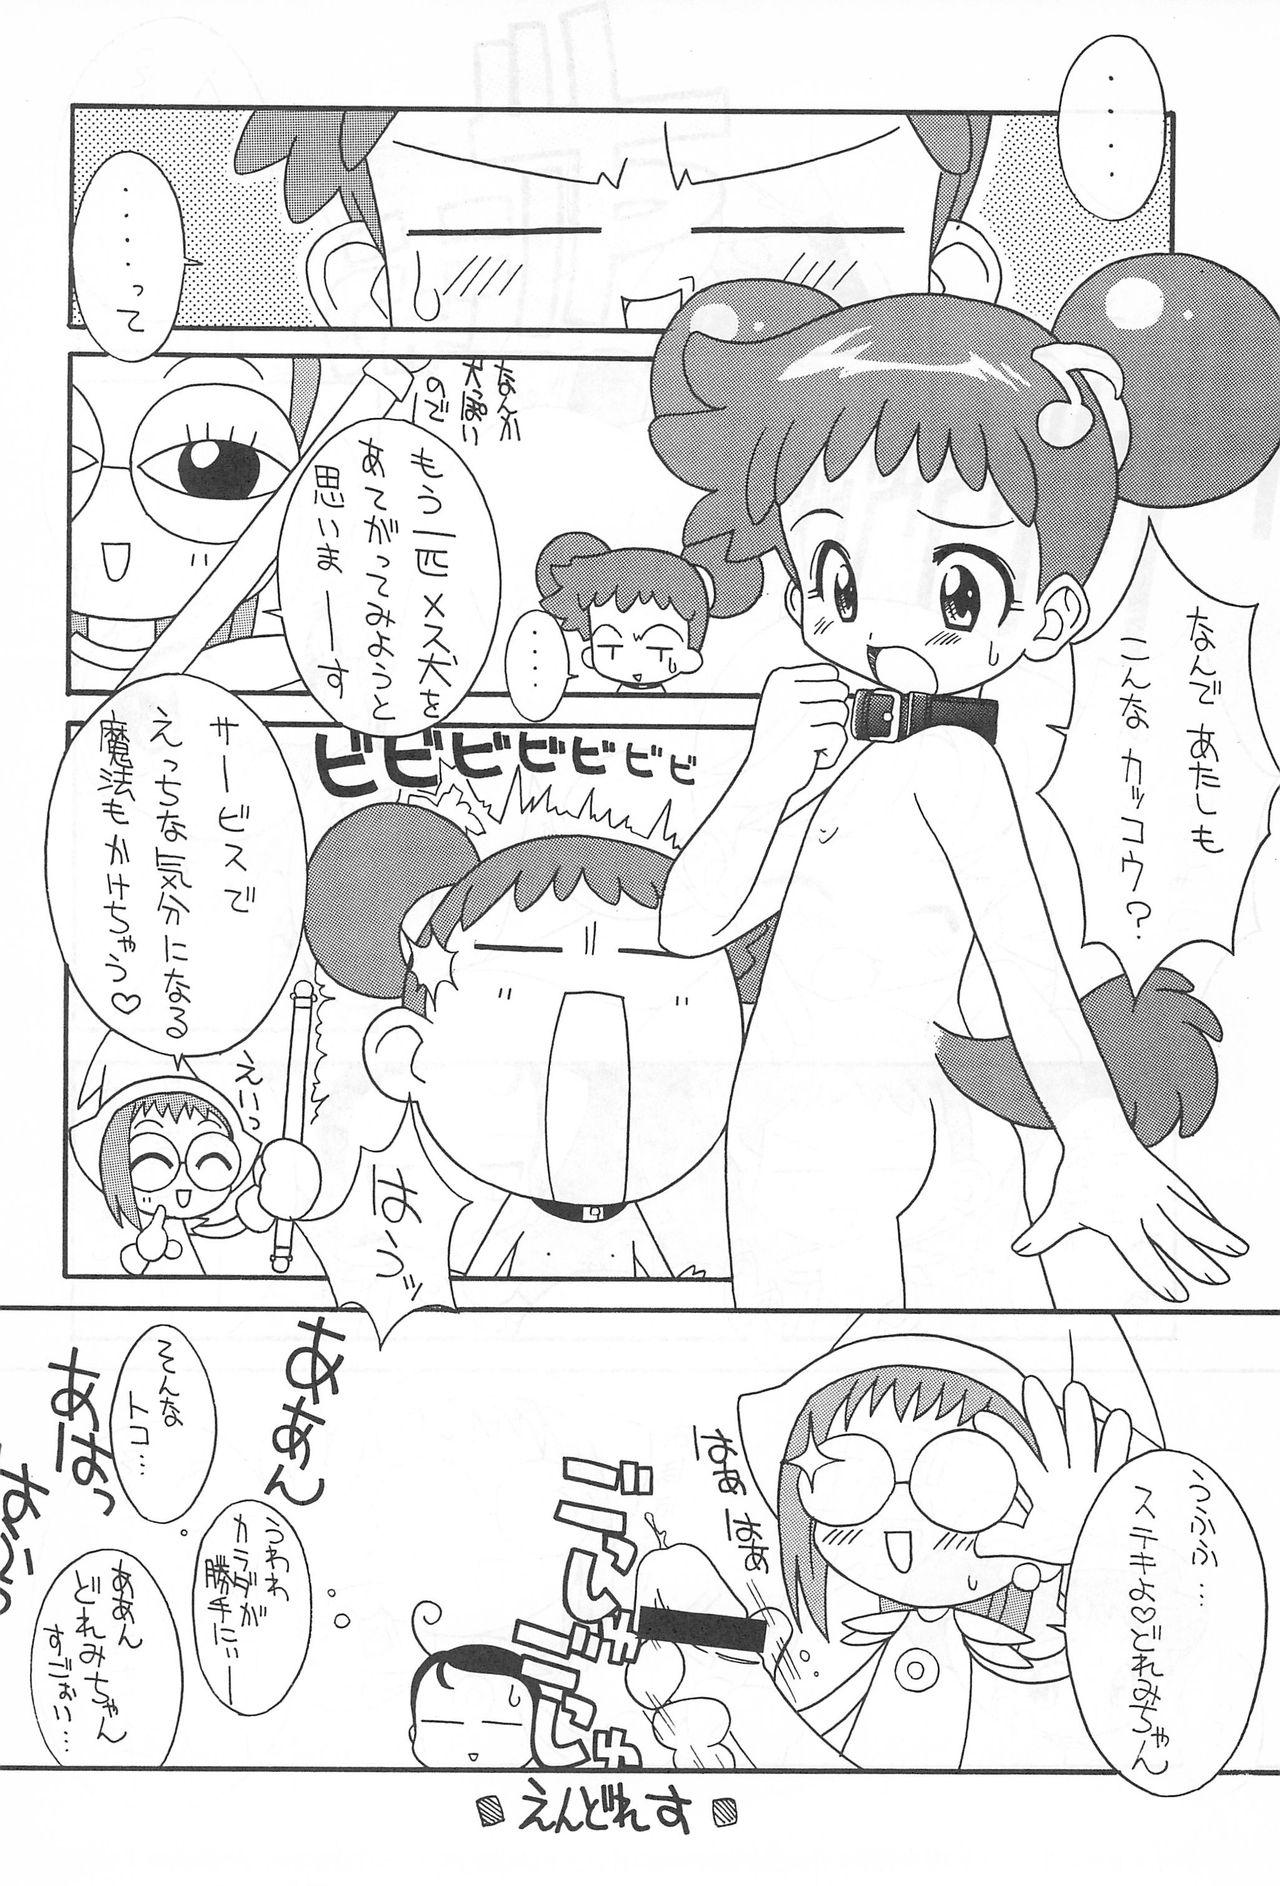 Bra Pretty Ecchi - Ojamajo doremi Stripper - Page 10